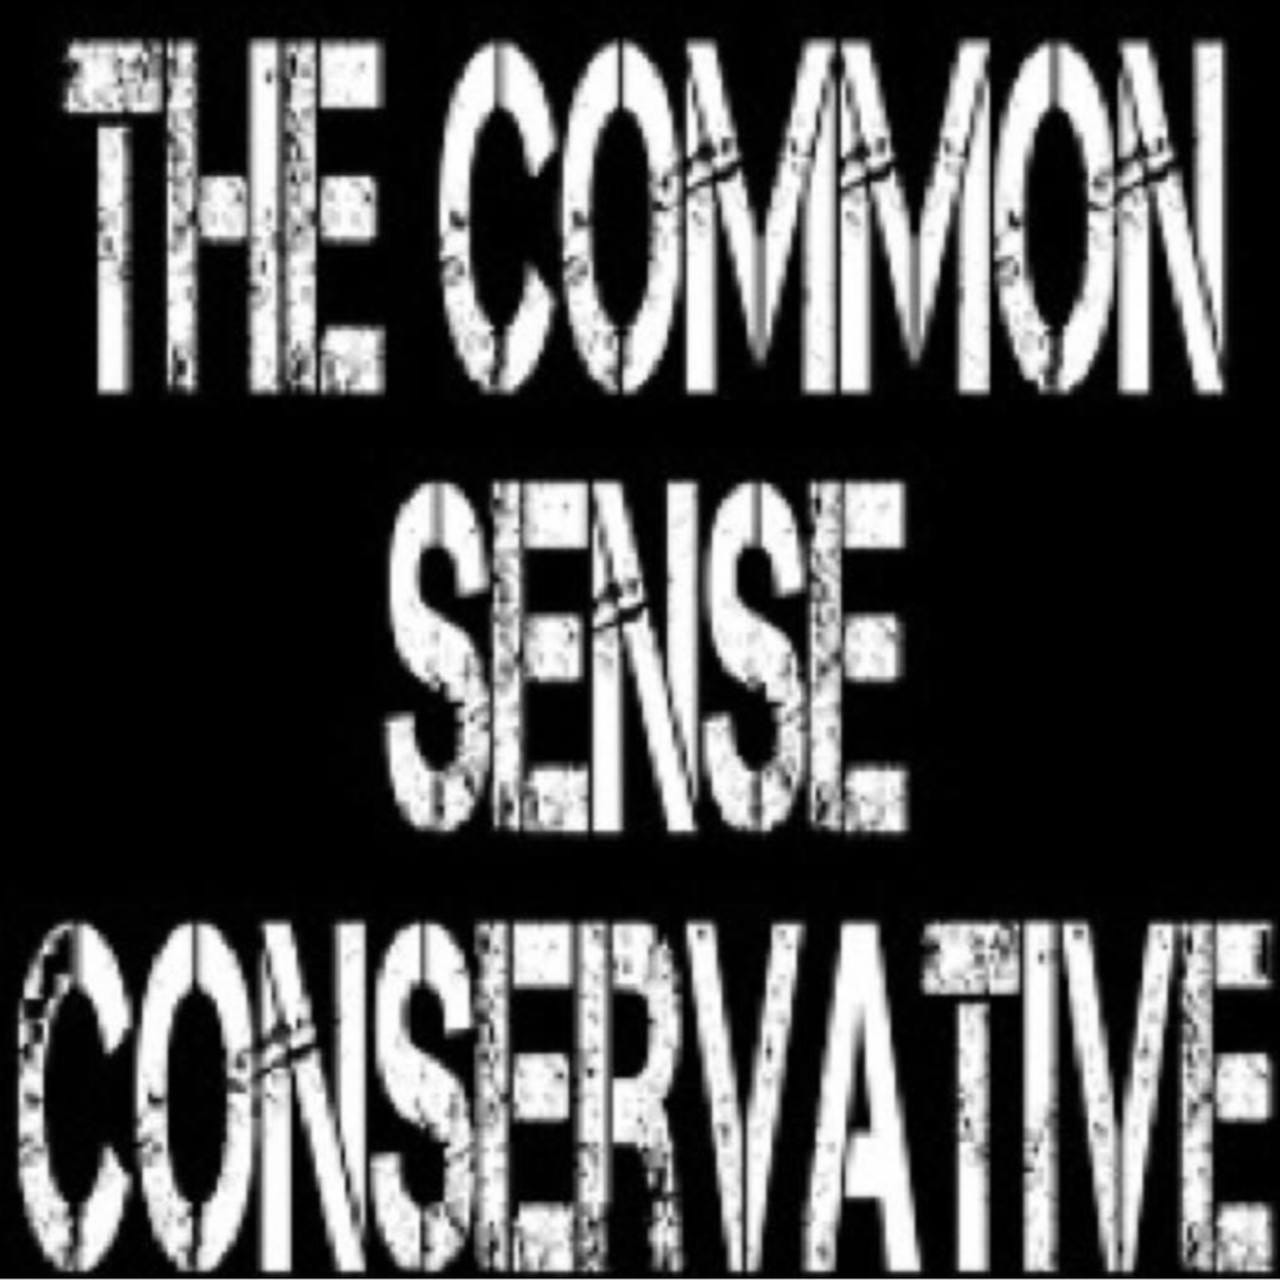 The Common Sense Conservative